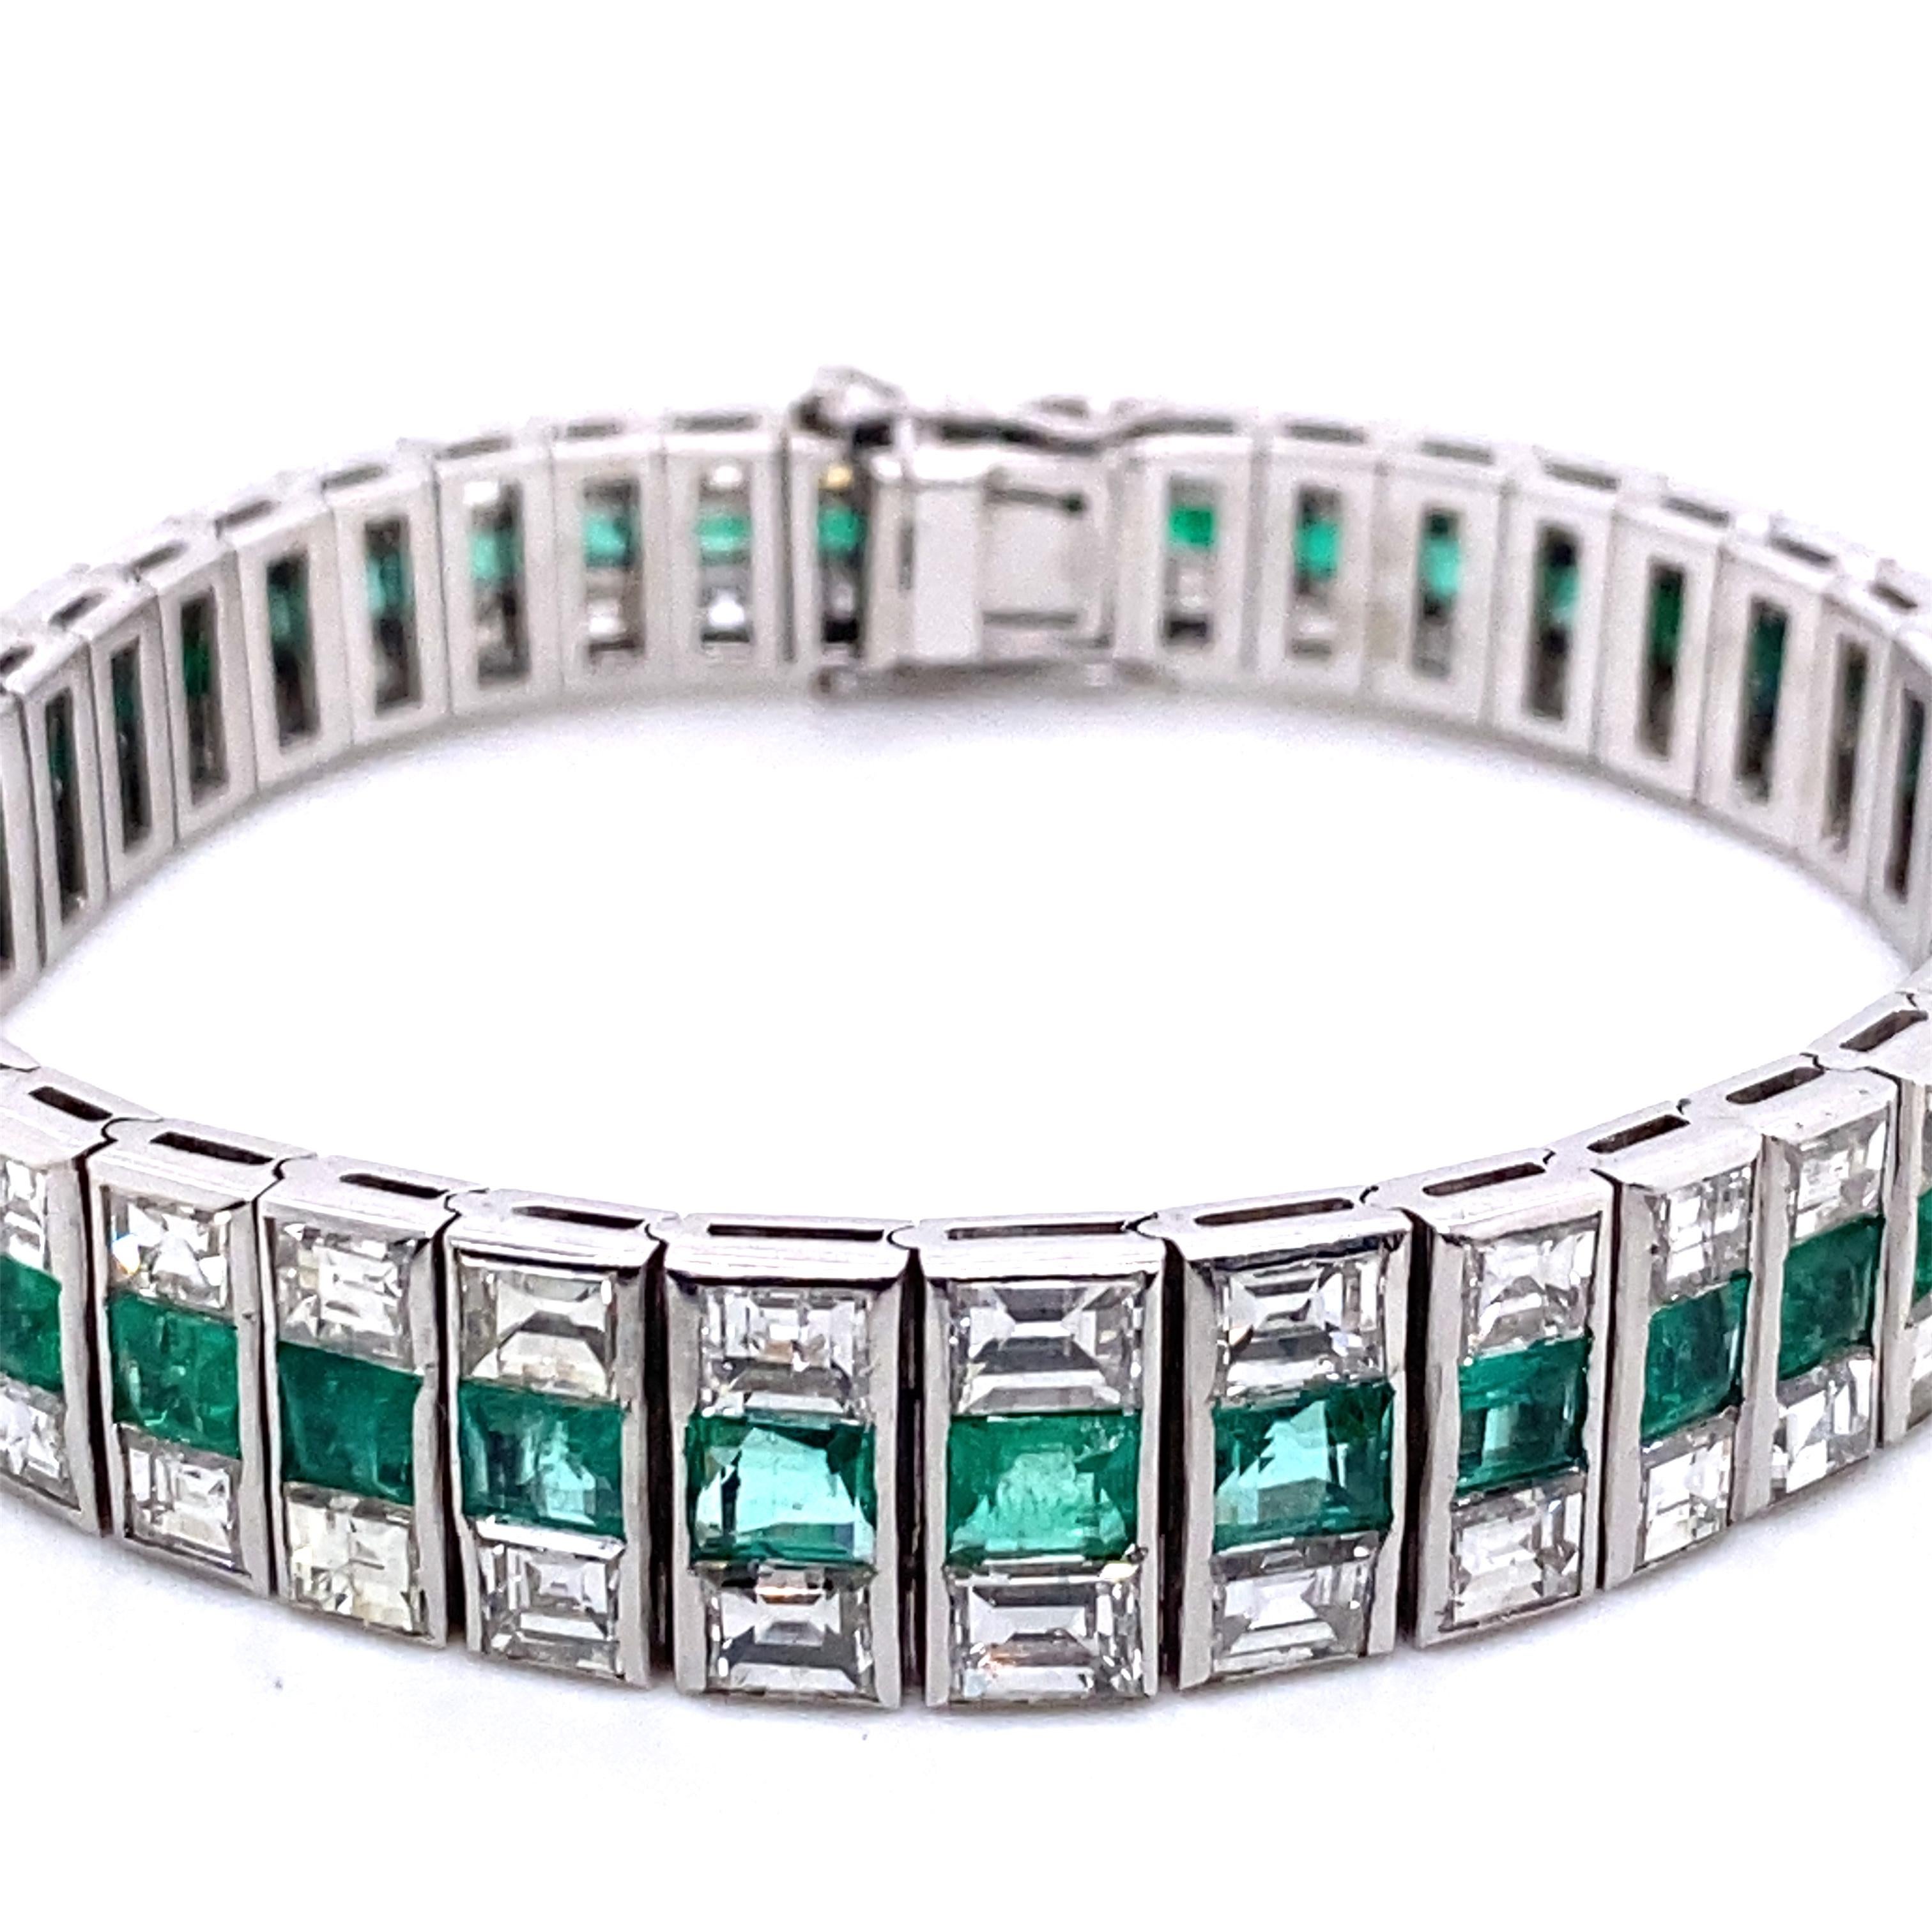 D'une élégance spectaculaire, ce bracelet de tennis présente 16 carats de diamants F/G classés VVS et 22 carats d'émeraudes sertis dans de l'or blanc 18 carats. 

Il mesure 18 cm de long. Il a été fabriqué à la main selon des méthodes